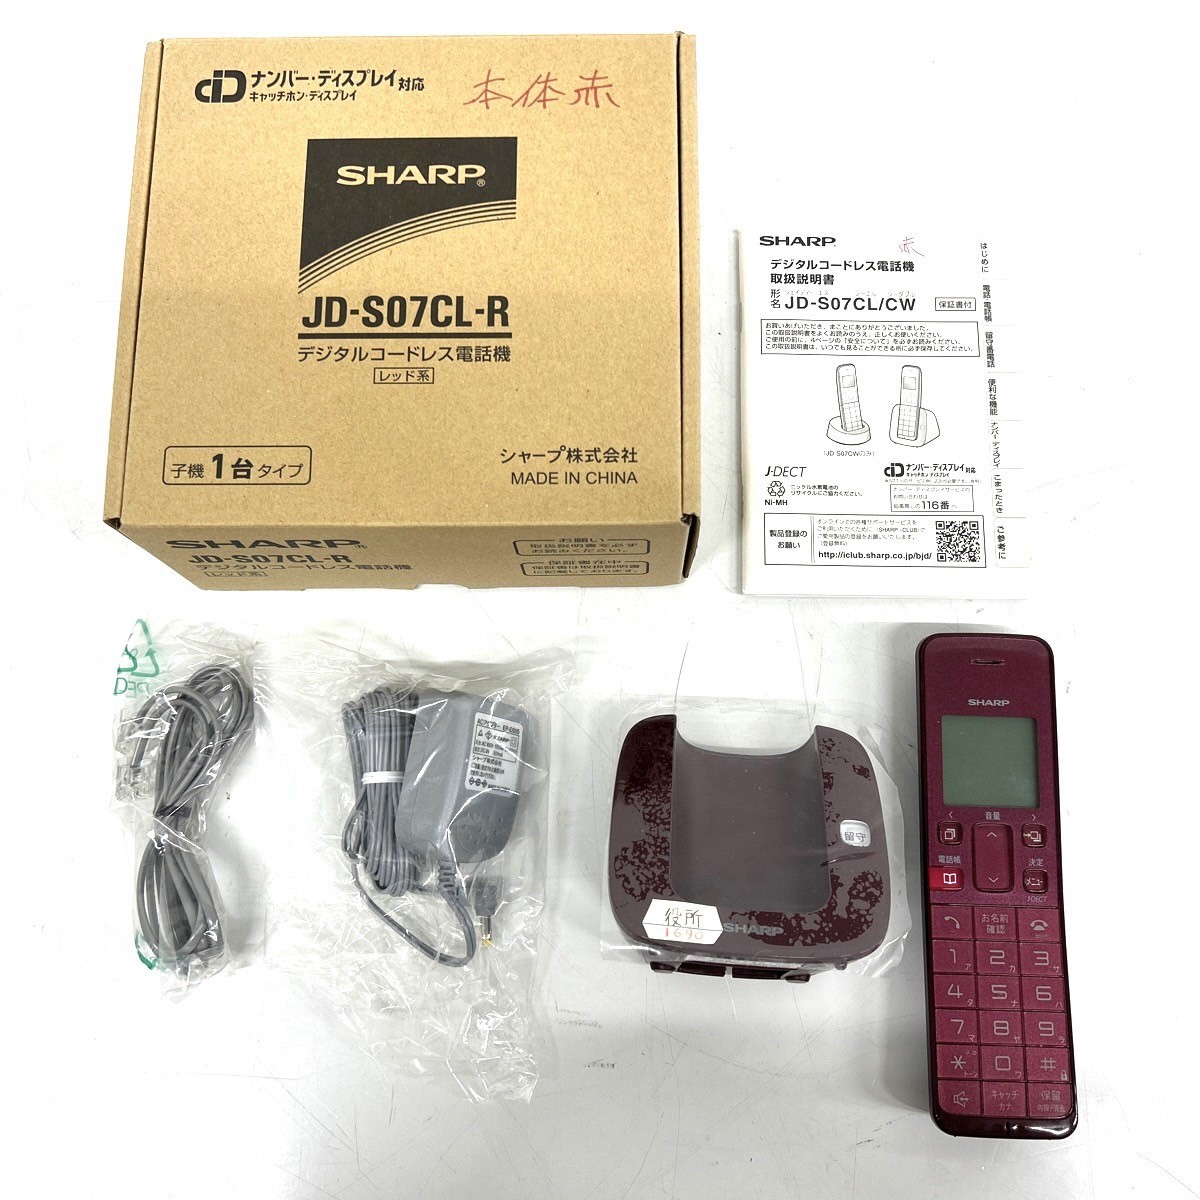 S150-W8-277 SHARP シャープ デジタルコードレス電話機 JD-S07CL-R 子機 赤 レッド系③_画像1